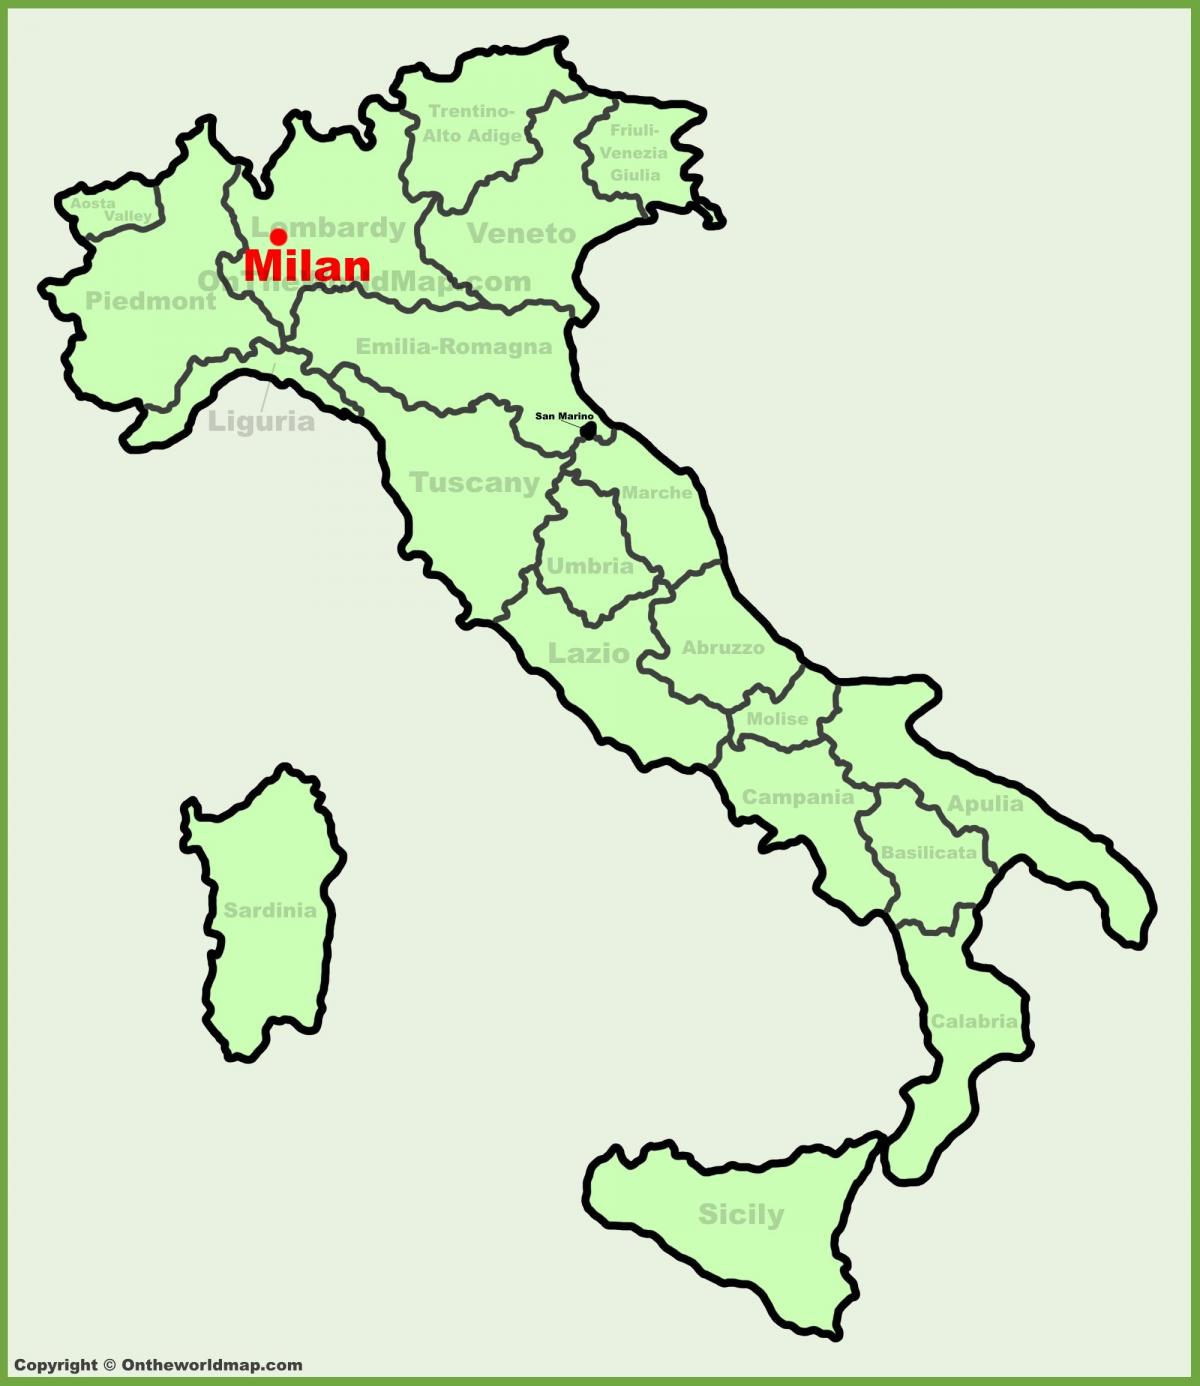 քարտեզ Իտալիայի ցույց է տալիս Միլան